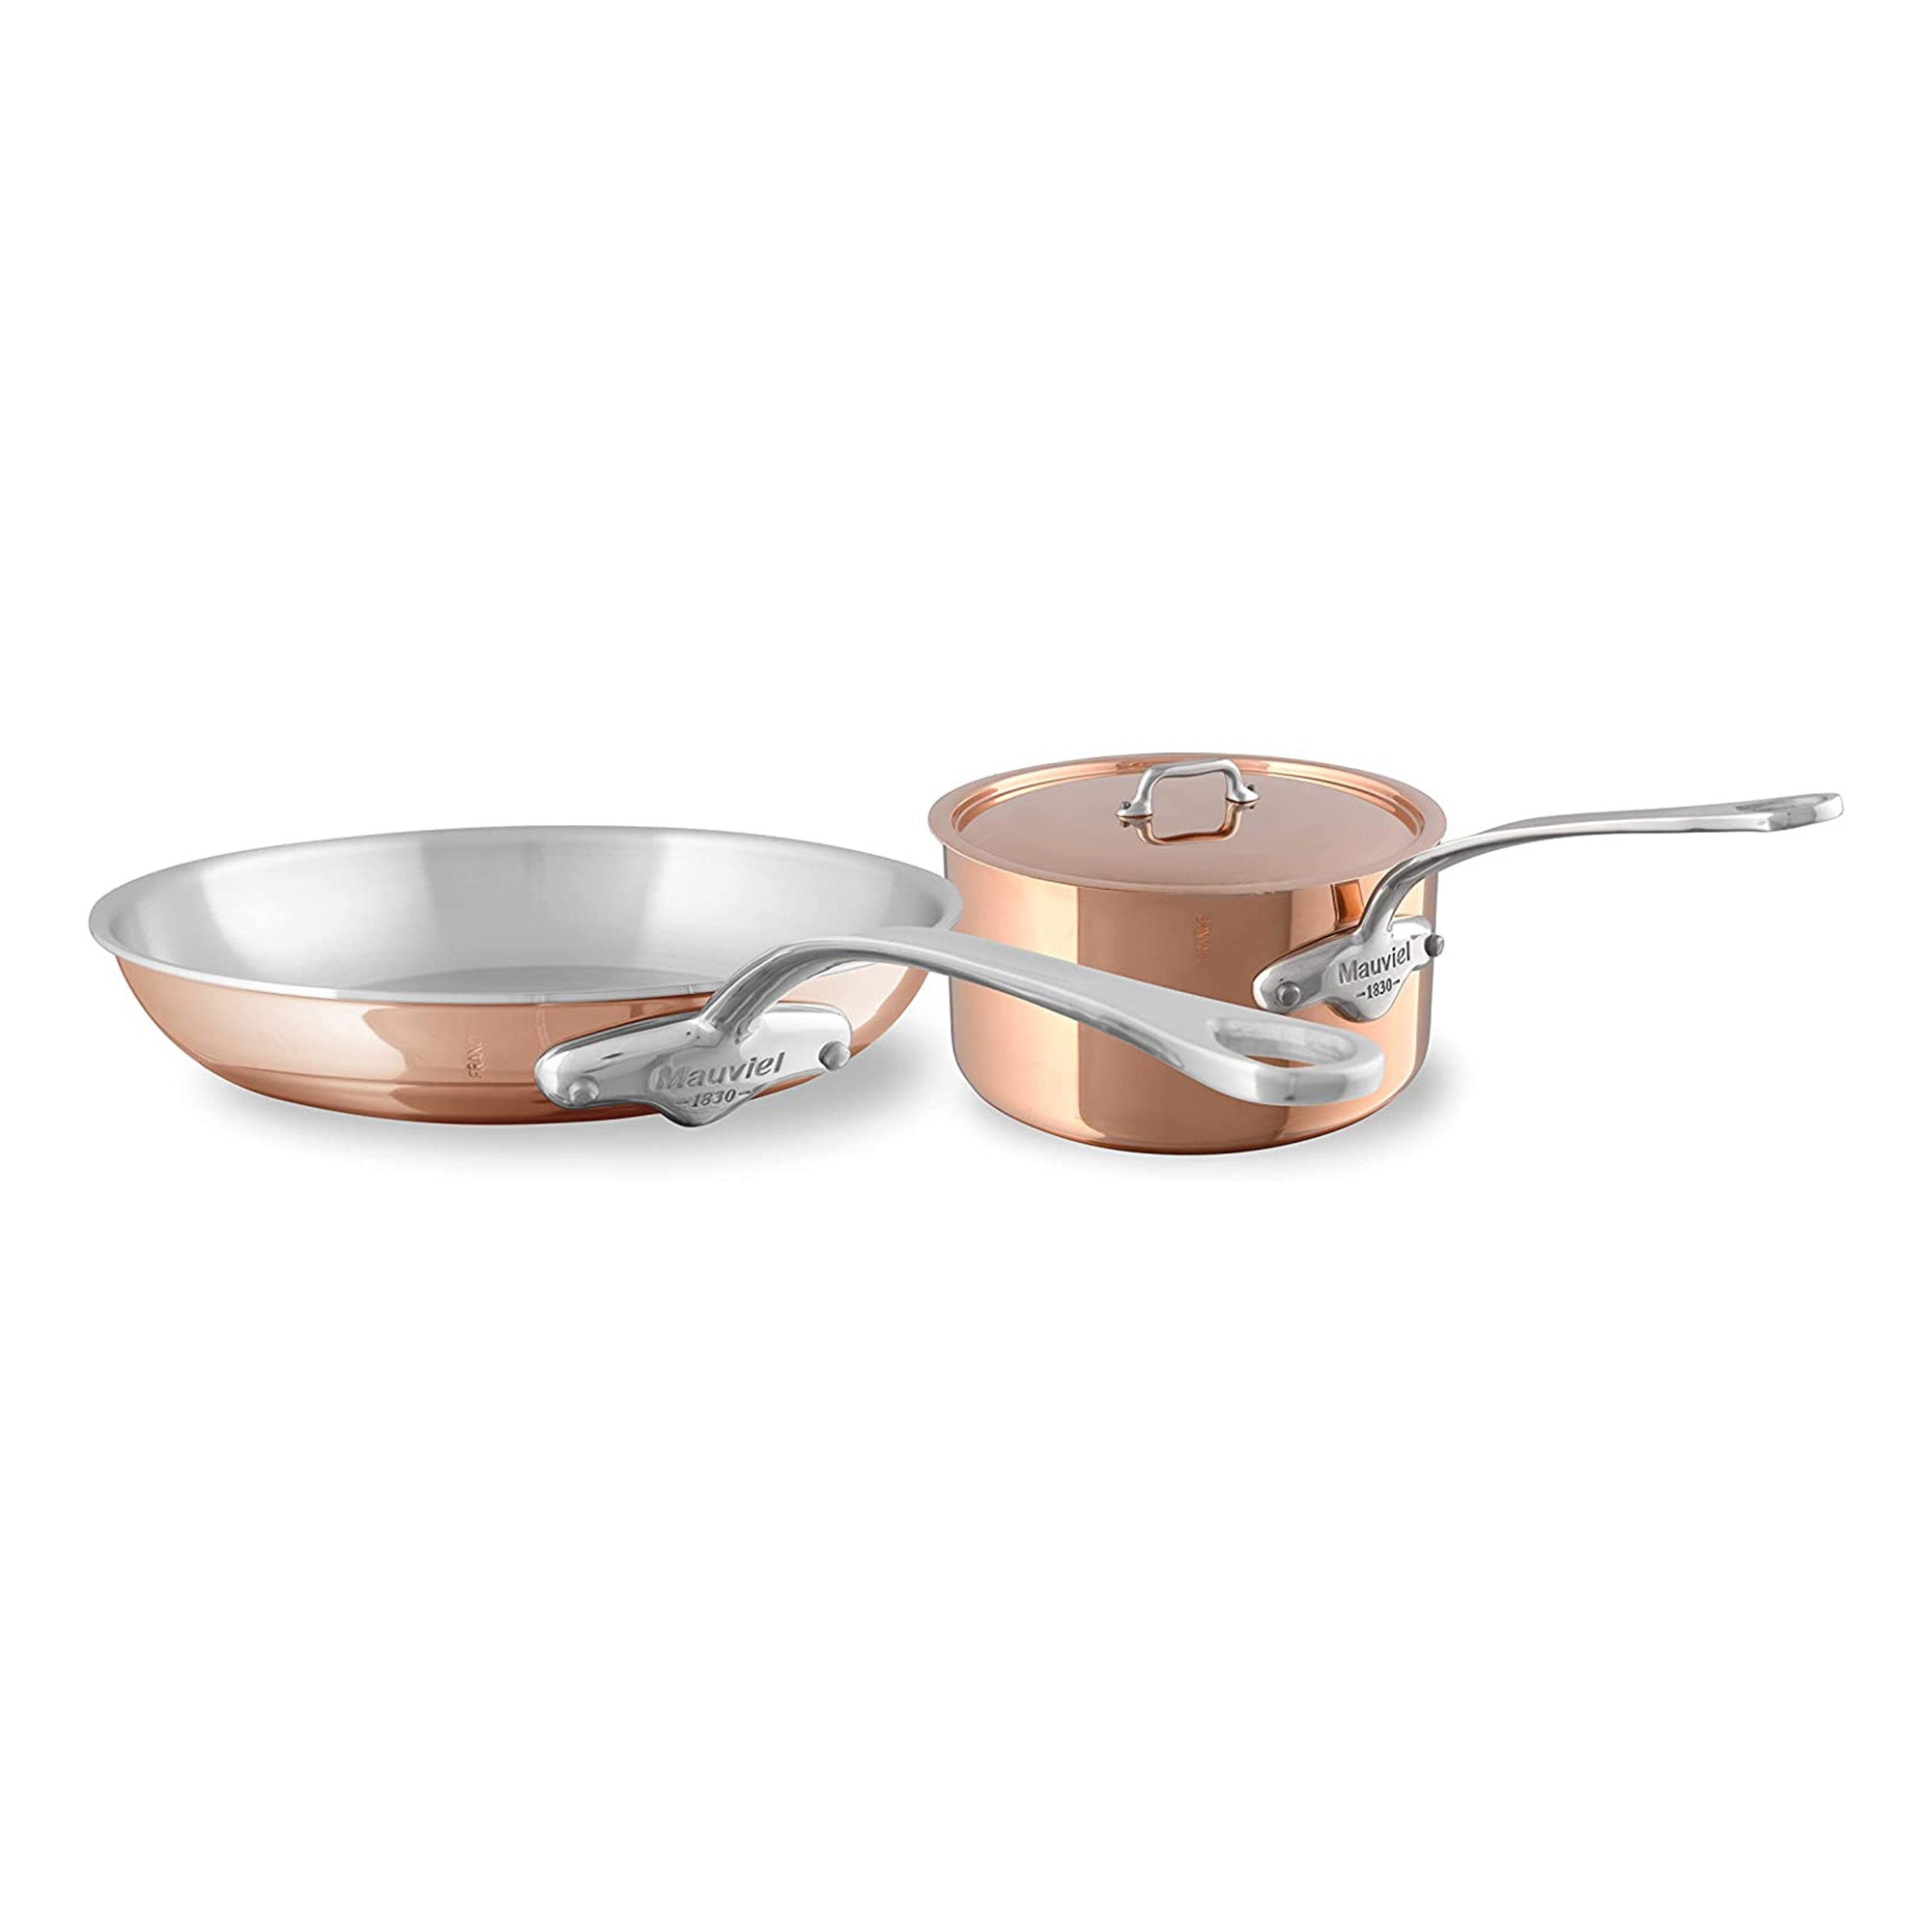 Copper Induction Saucier Pan, 2-Quart